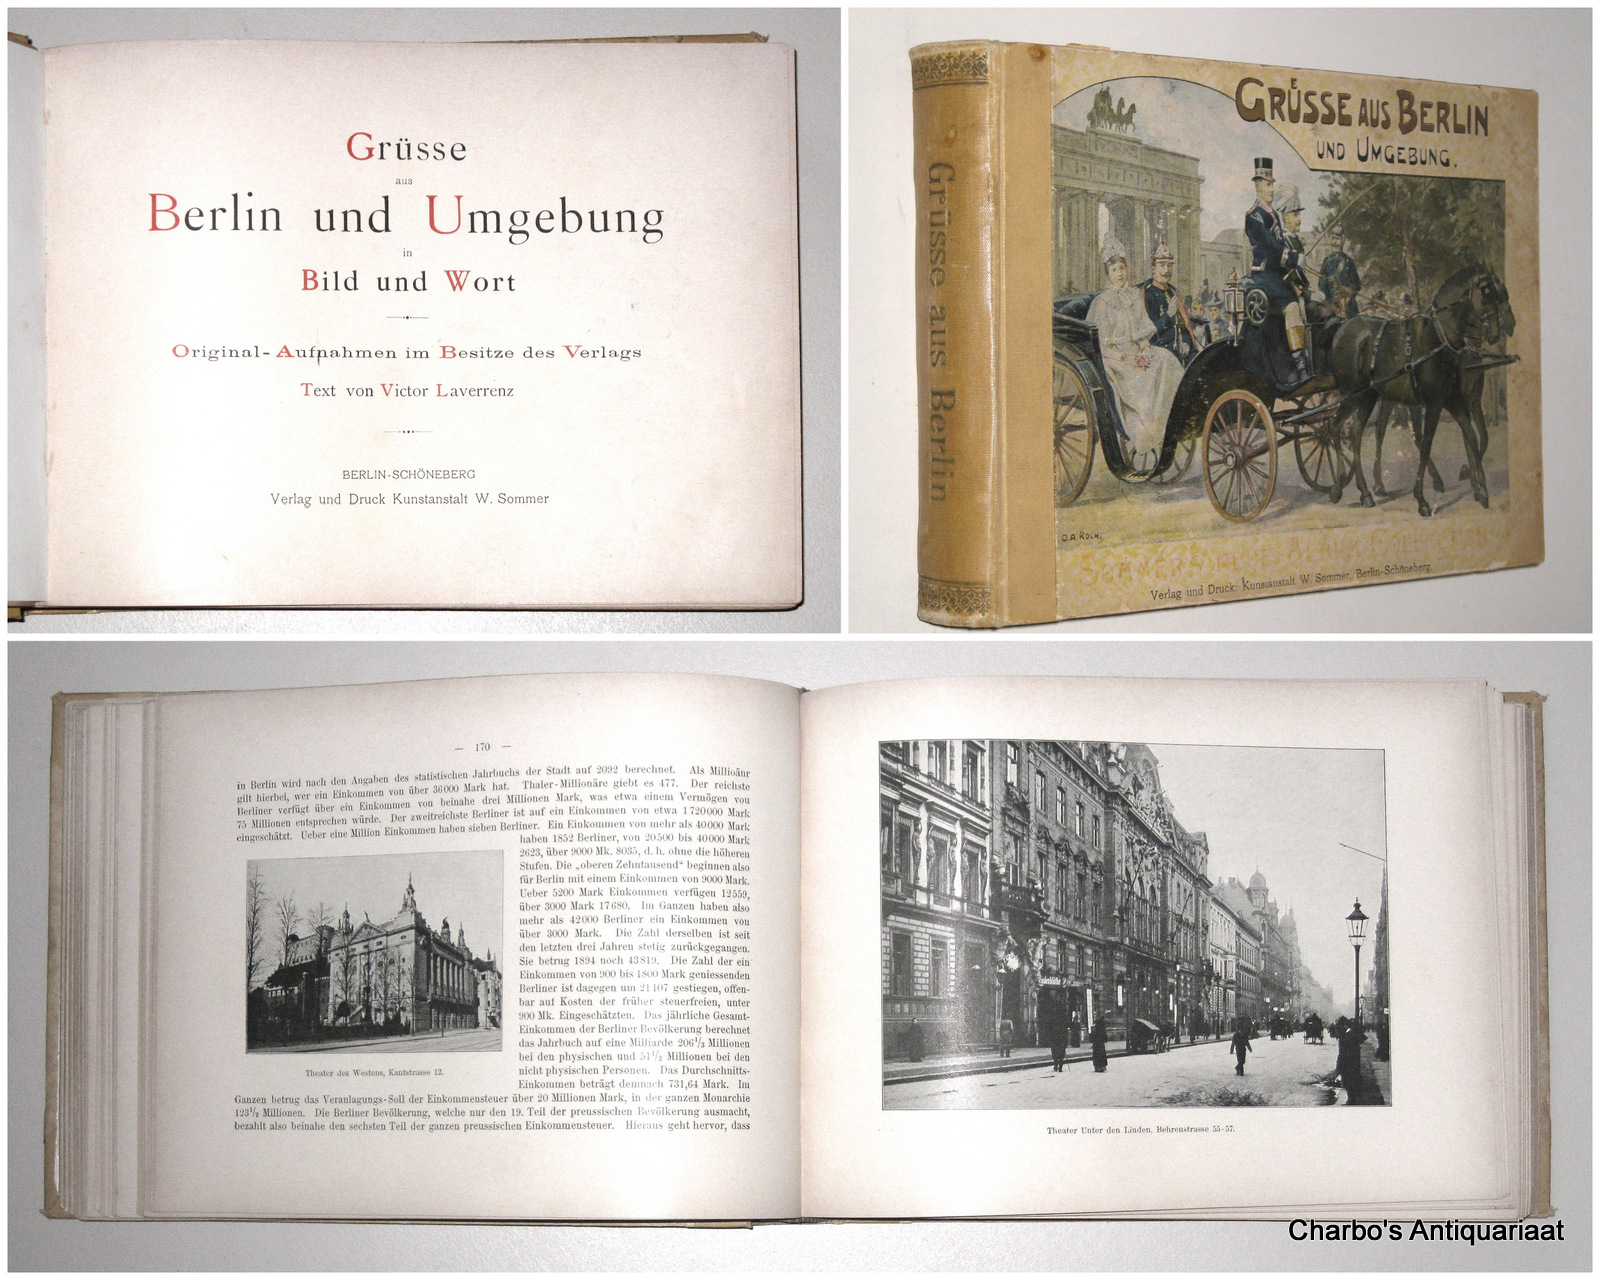 LAVERRENZ, VICTOR (Text), -  Grsse aus Berlin und Umgebung in Bild und Wort. Original-Aufnahmen im Besitze des Verlags.